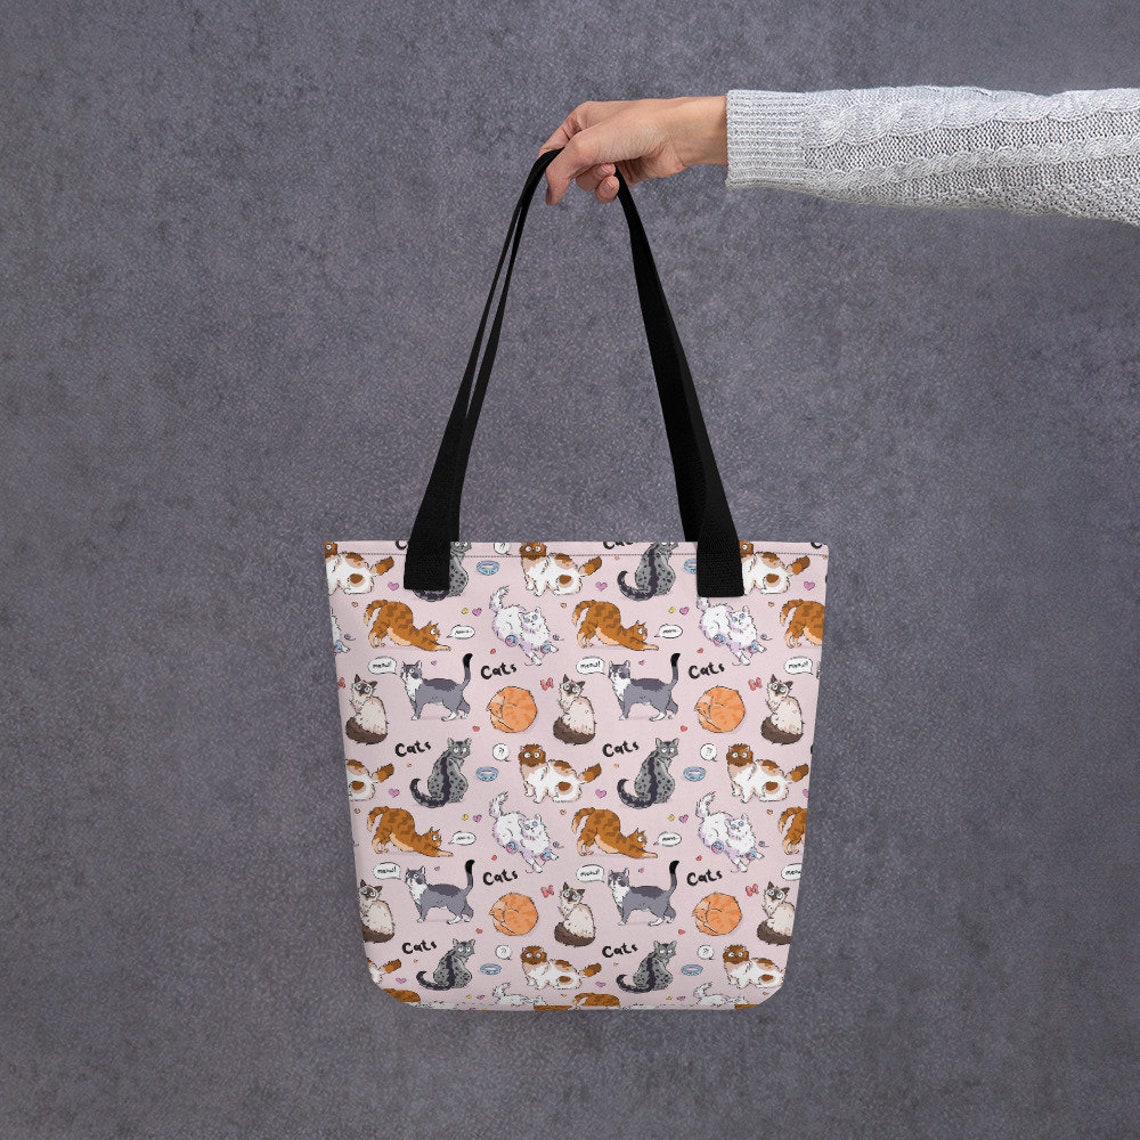 Cute Colorful Cartoon Cat printed Tote bag carry bag cat | Etsy